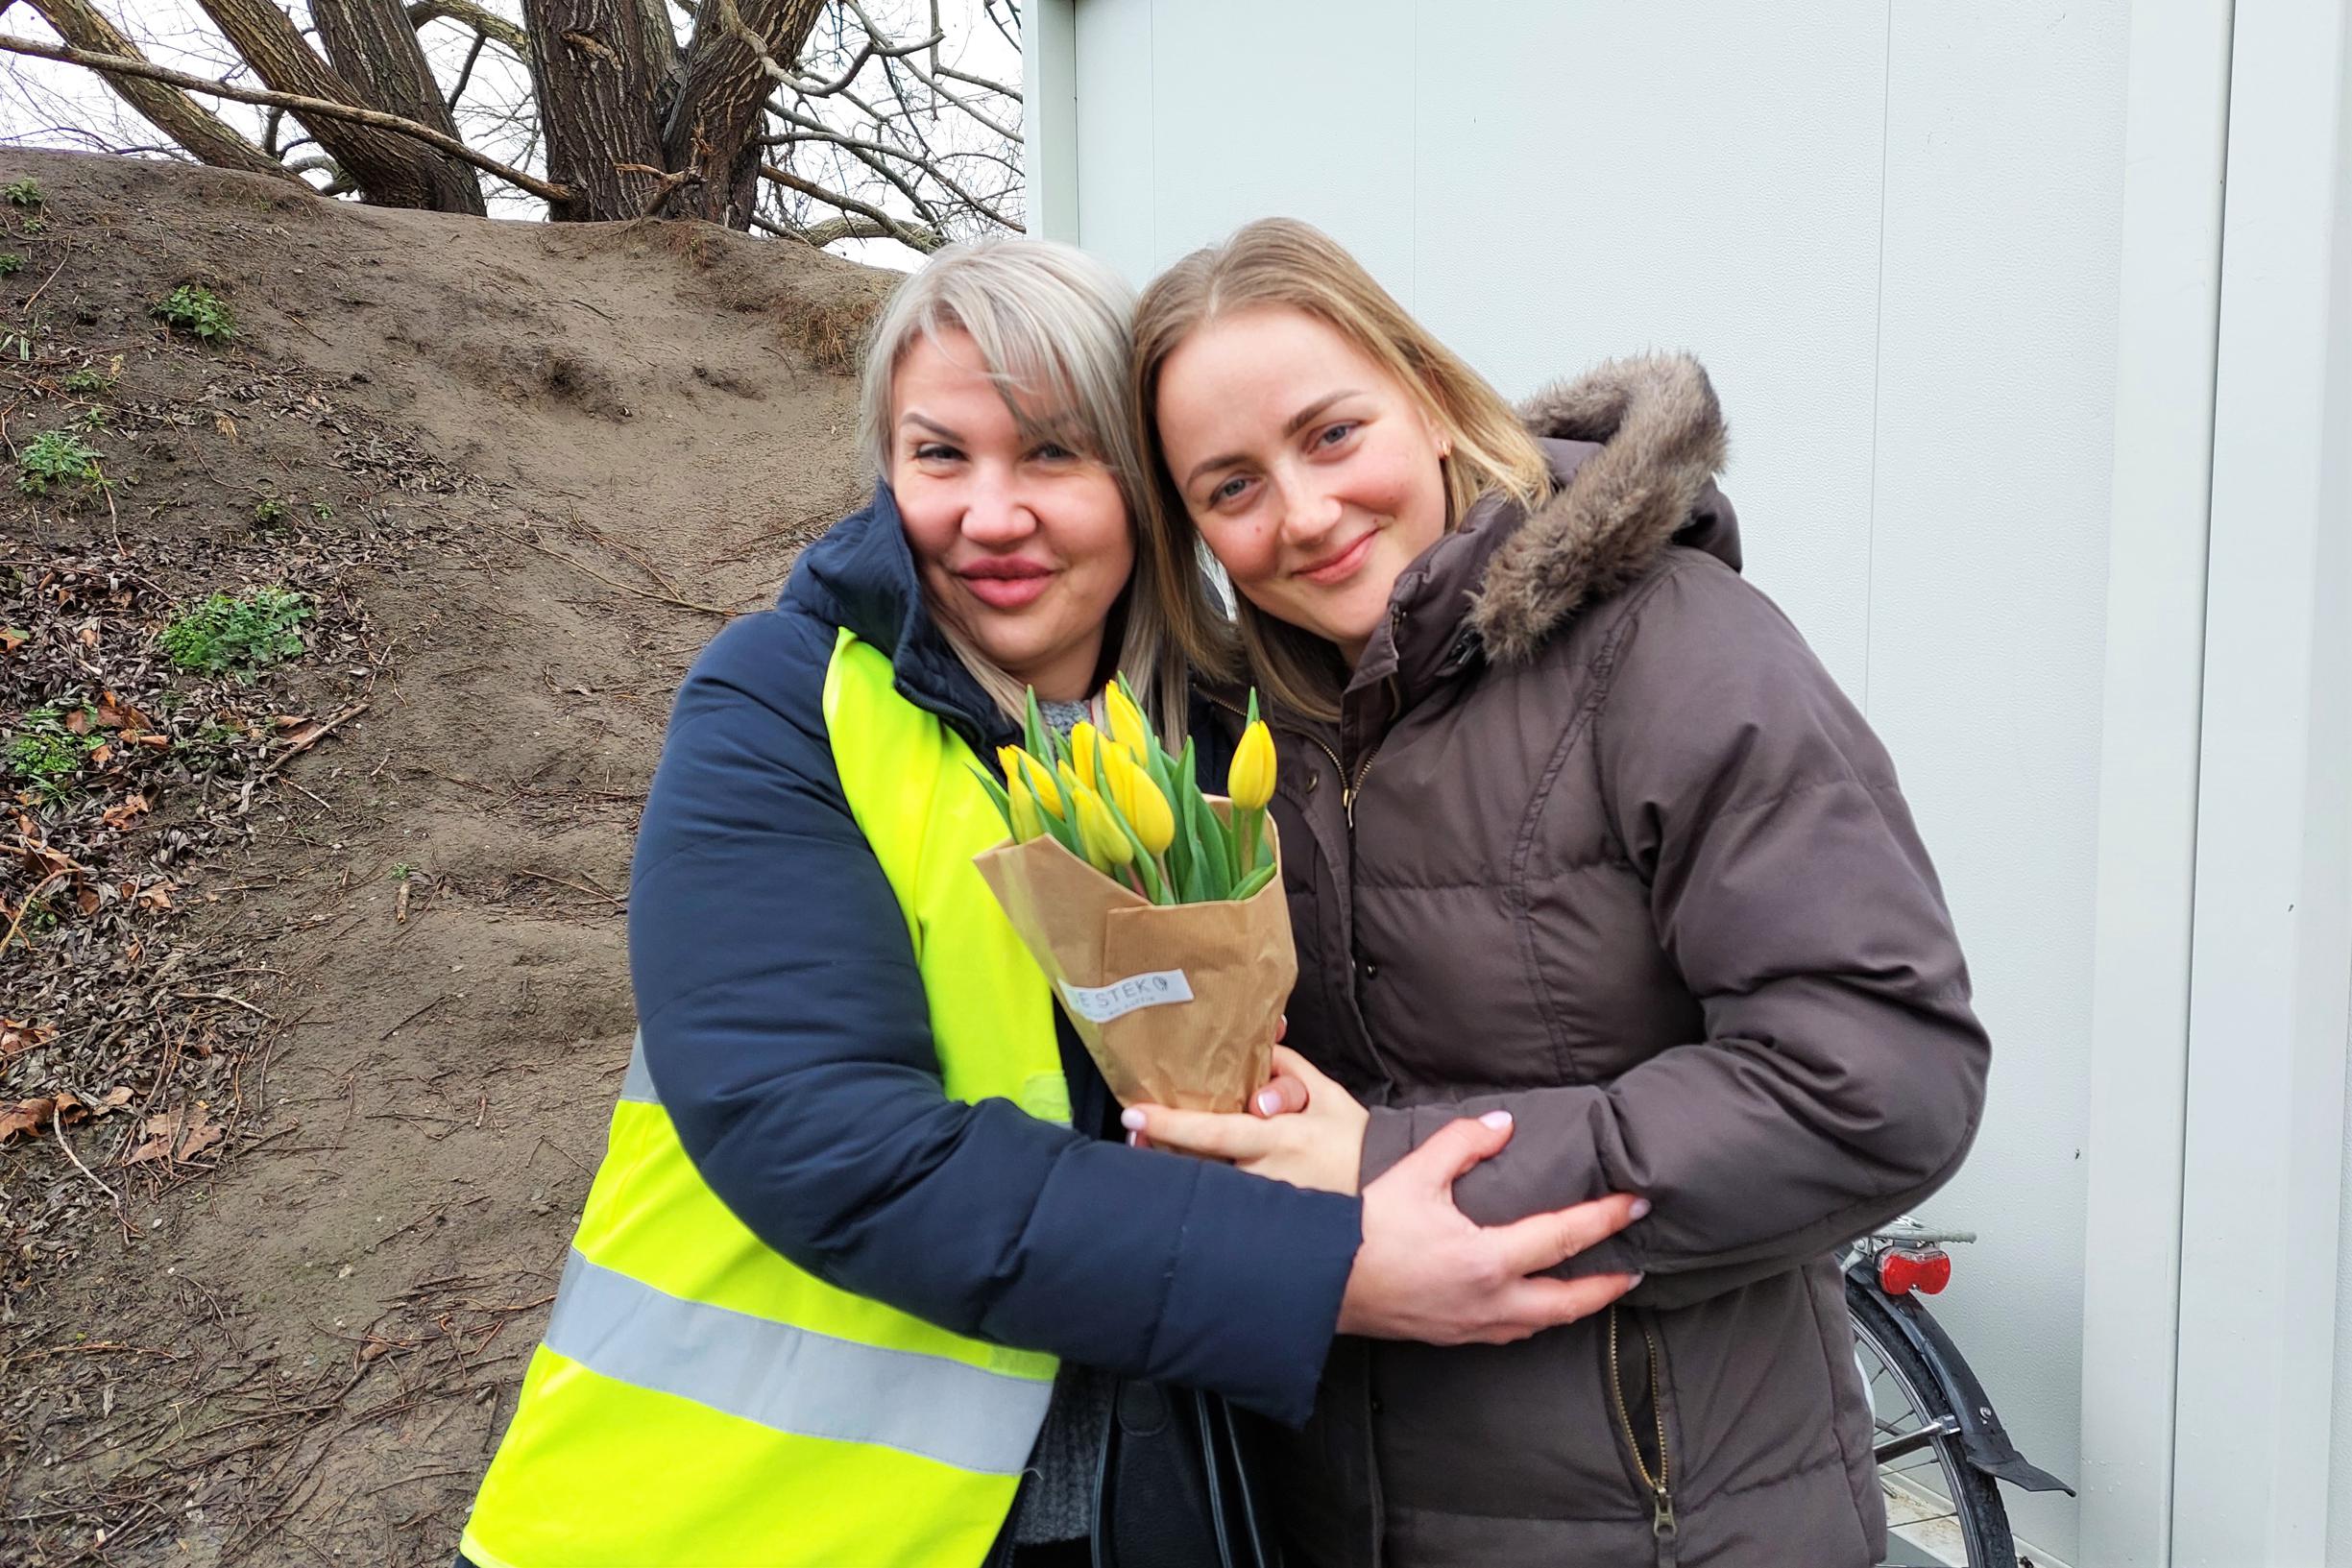 Oekraïense vrouwen en meisjes krijgen bloemen op Internationale Vrouwendag “Fijn dat er aan ons gedacht wordt” (Mechelen) Het Nieuwsblad Mobile